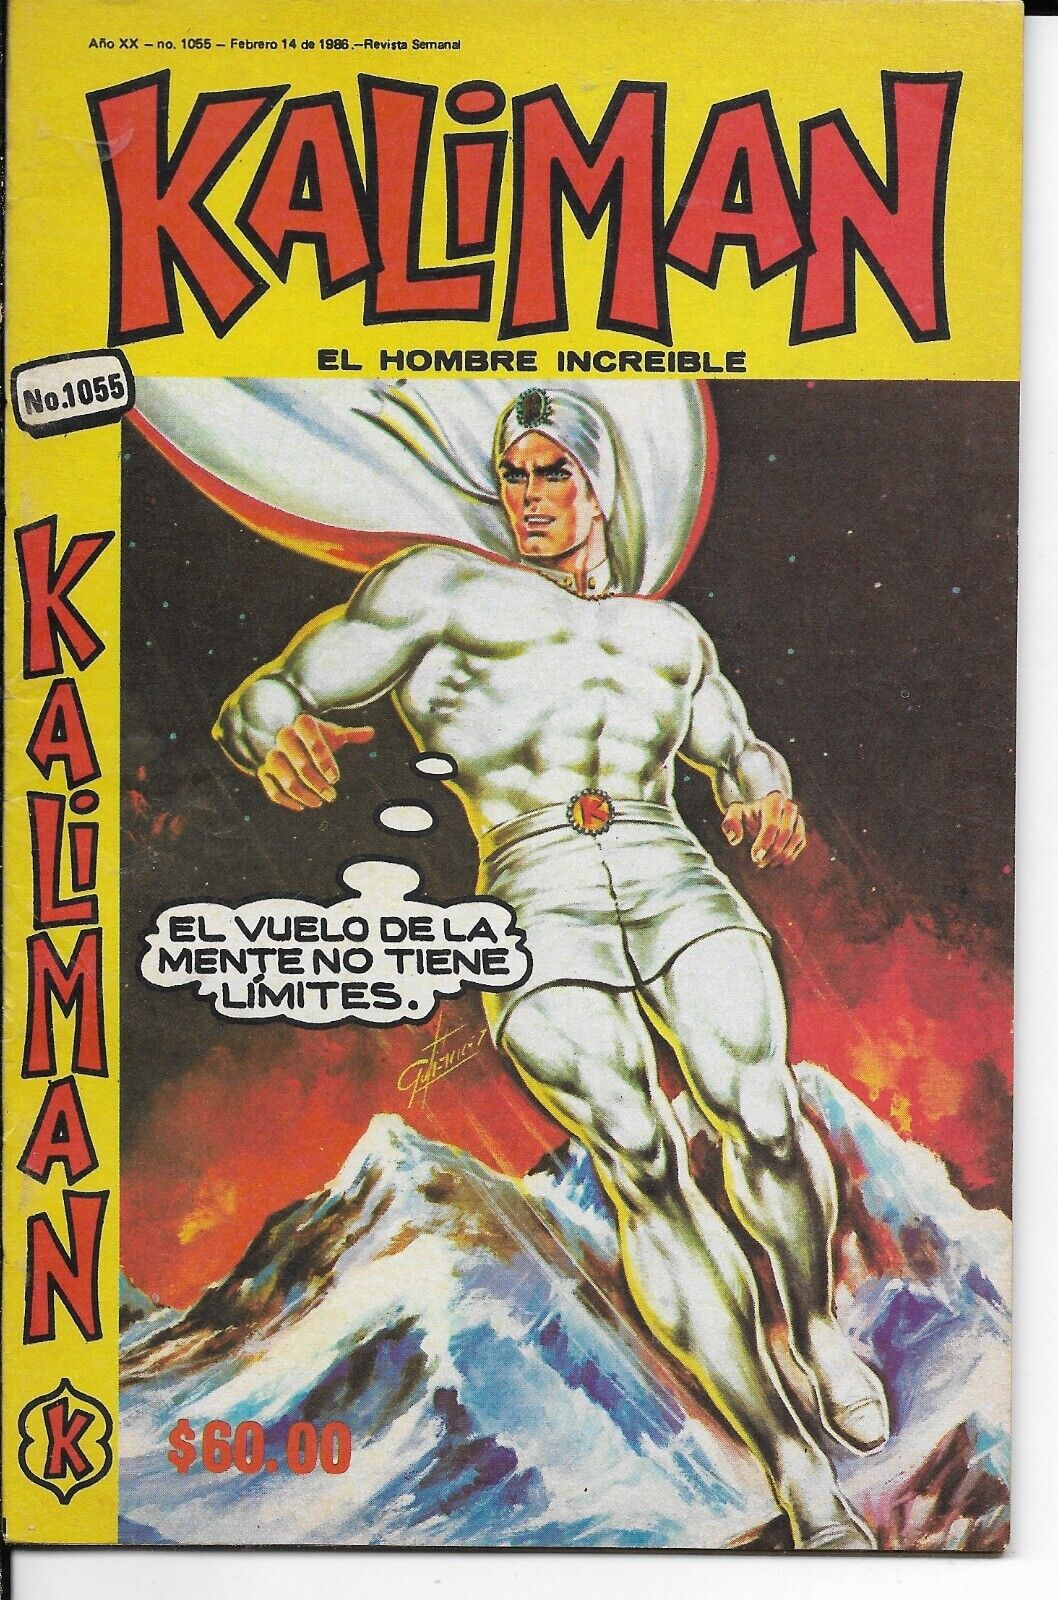 Kaliman El Hombre Increible #1055- Febrero 14, 1986